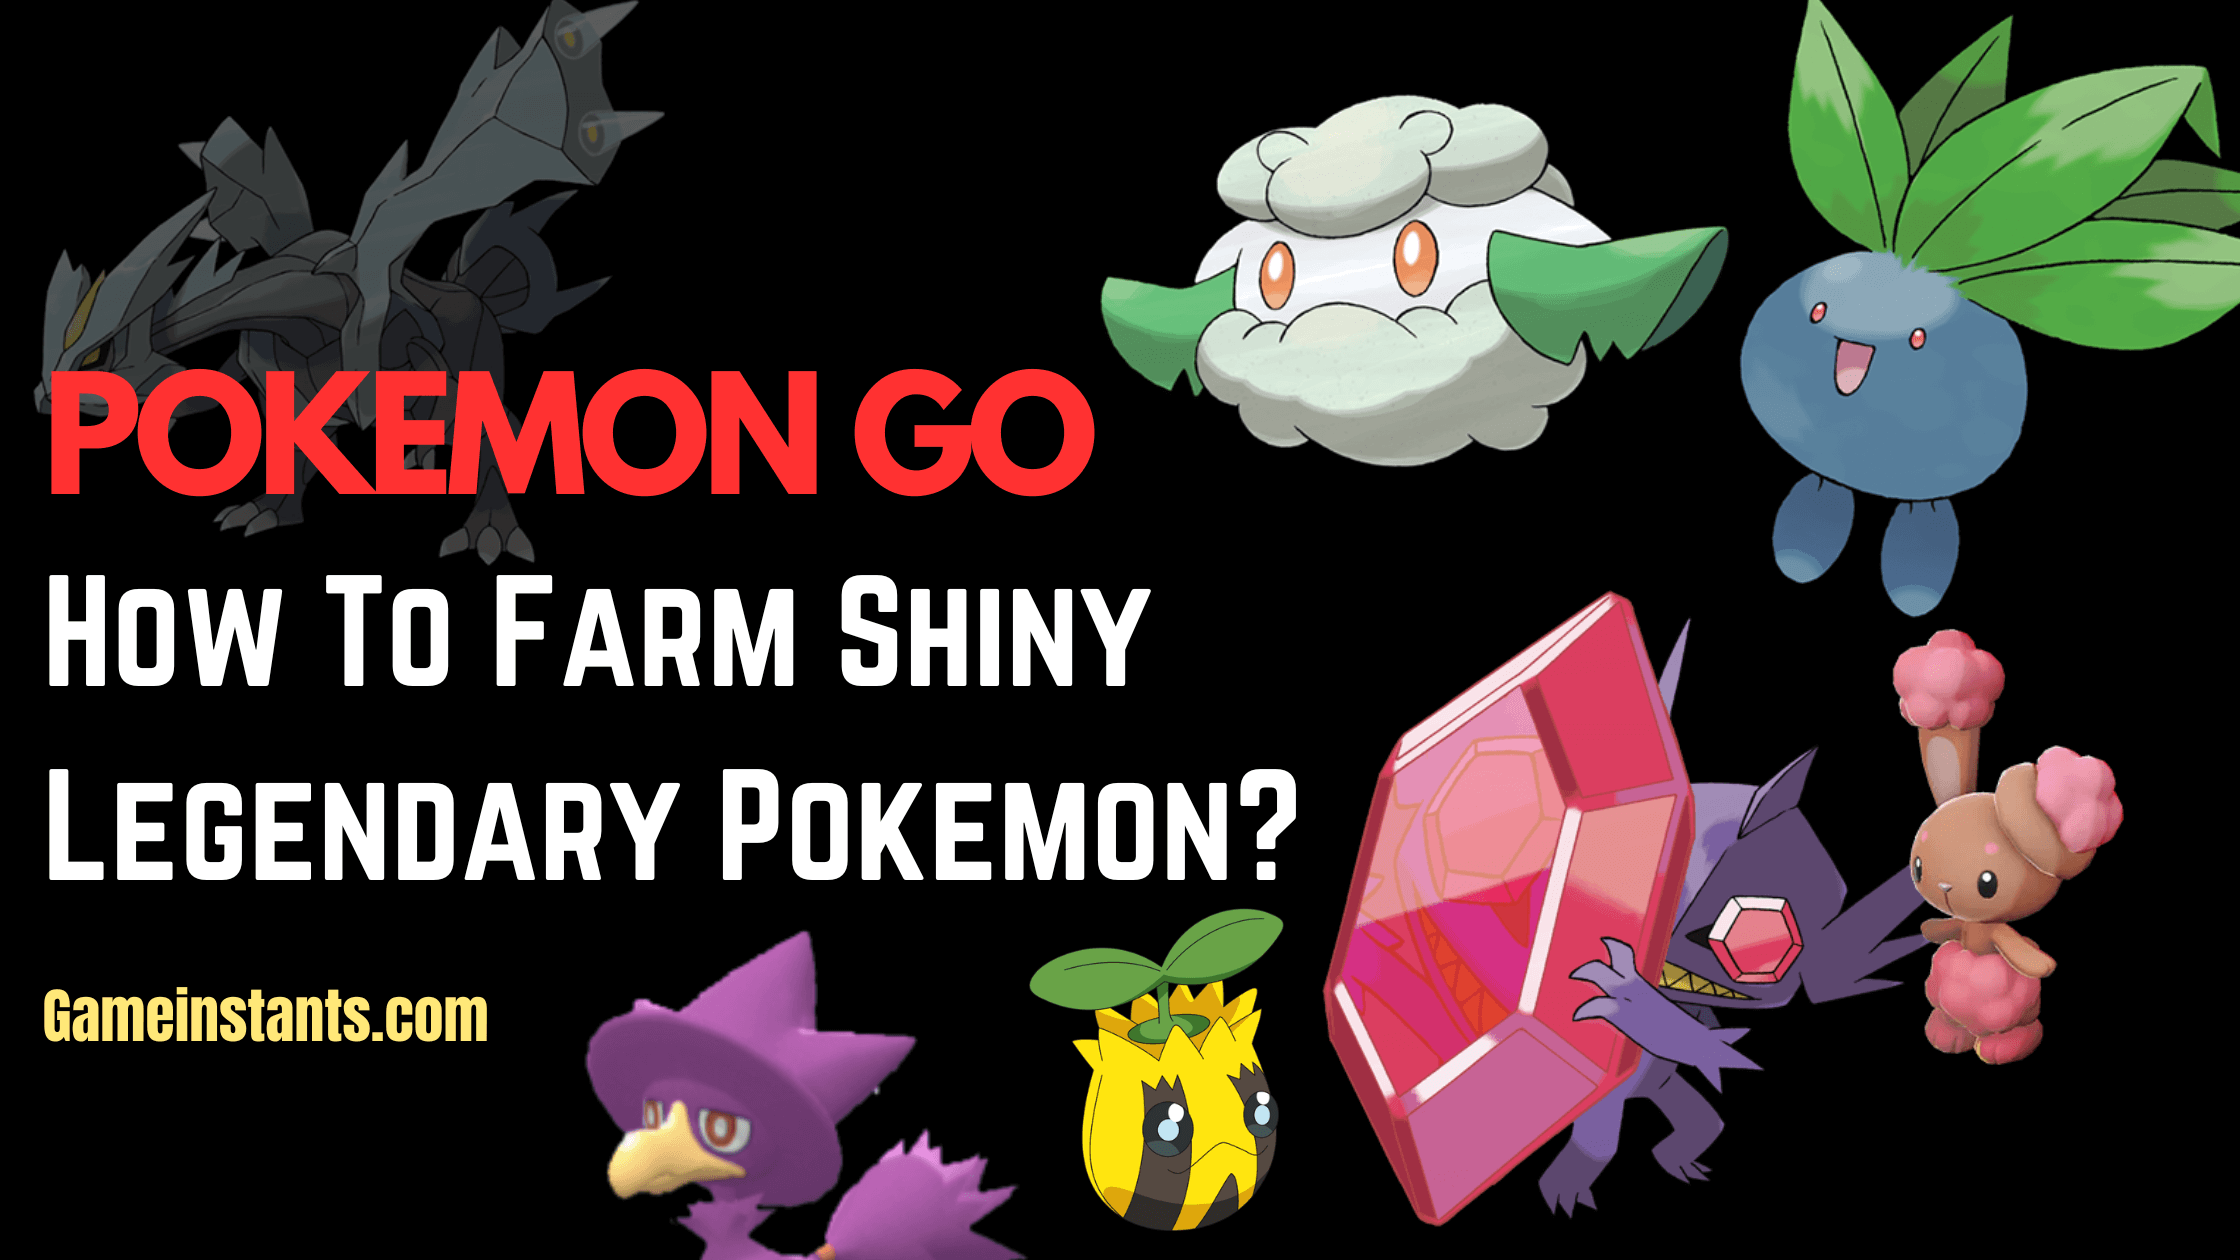 How to farm shiny legendary pokemon?